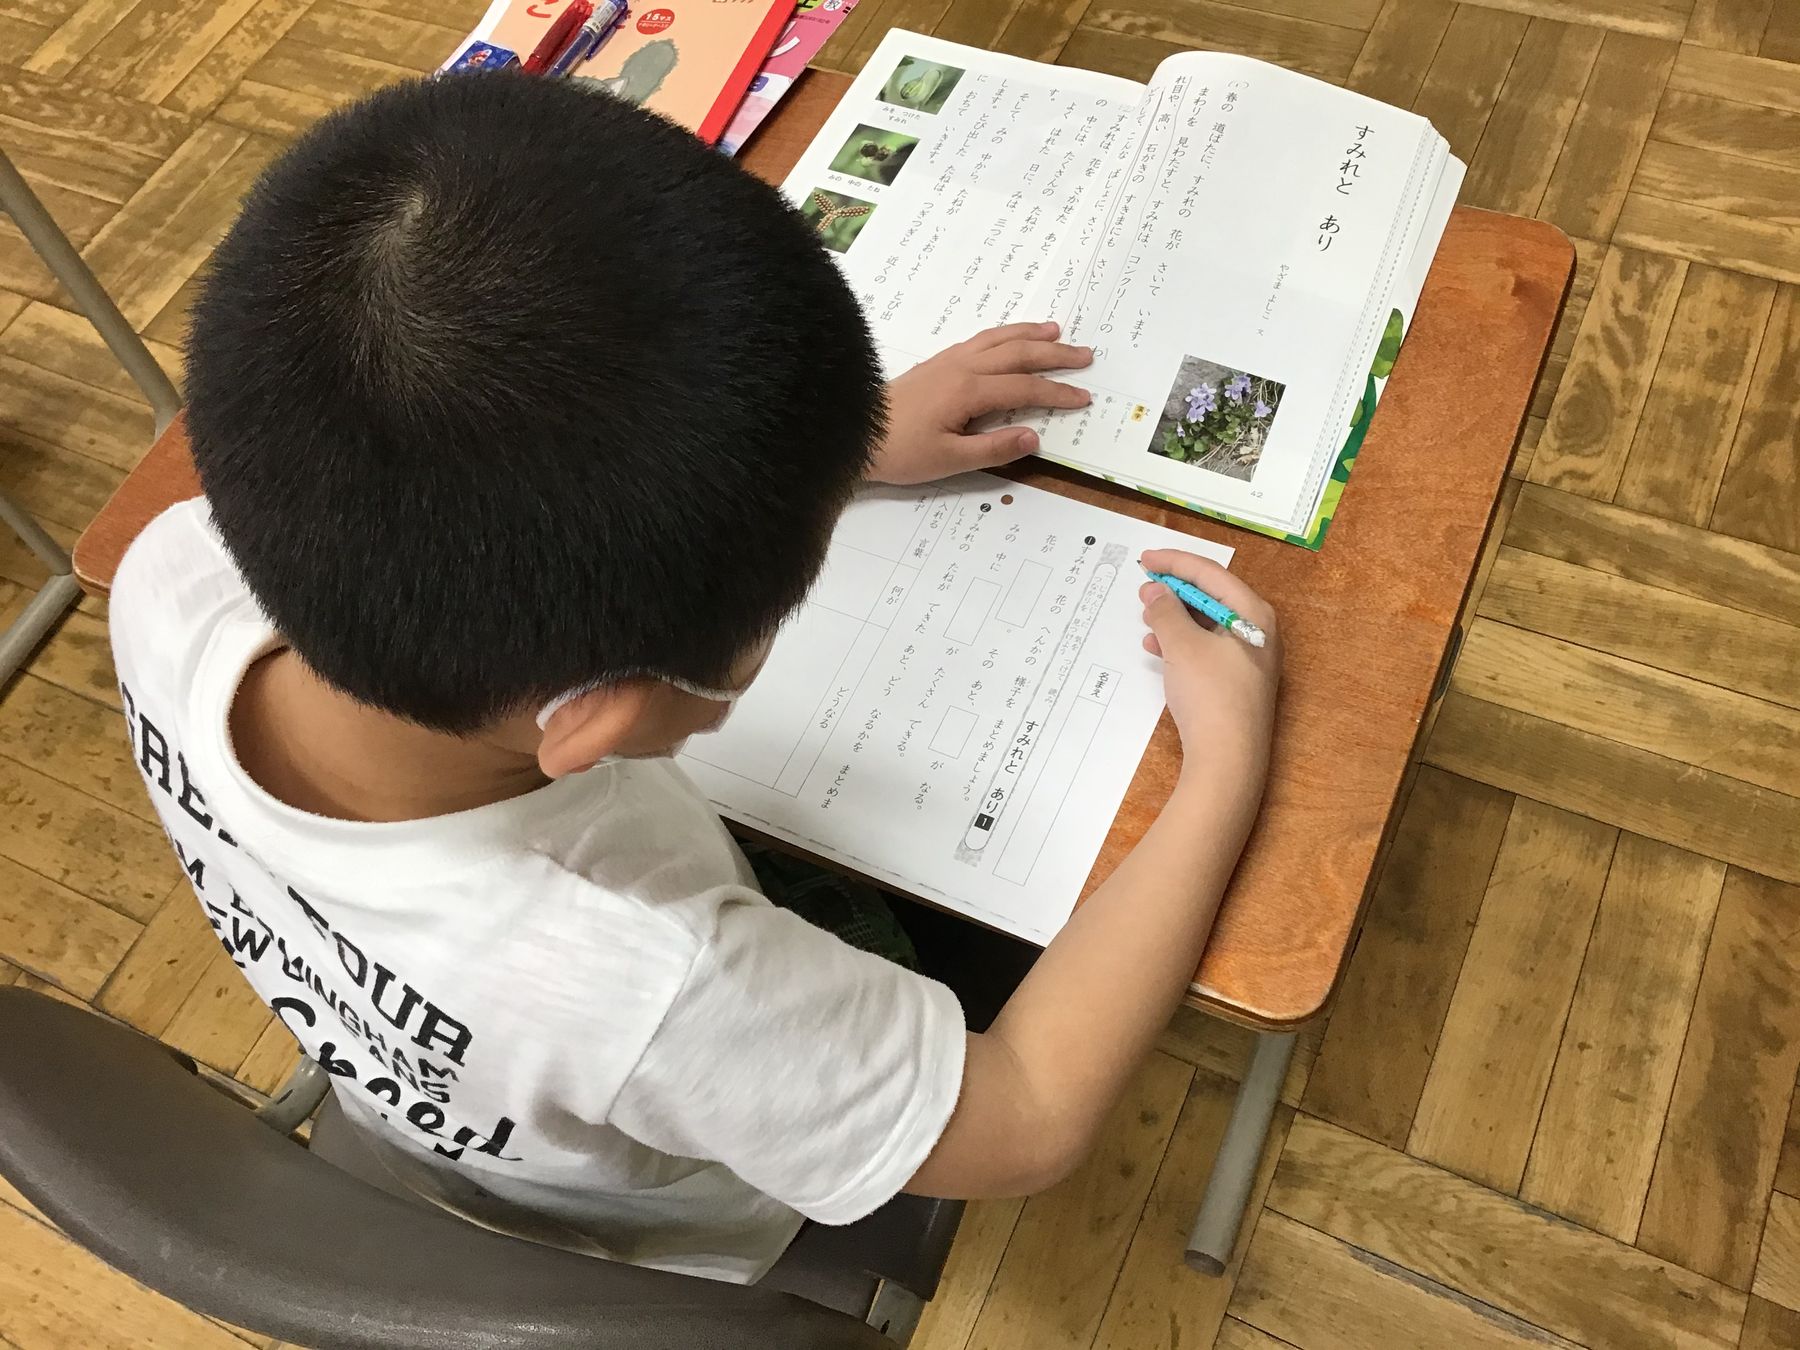 教室の机に向かい、教書を見ながら問題を解く男の子の写真